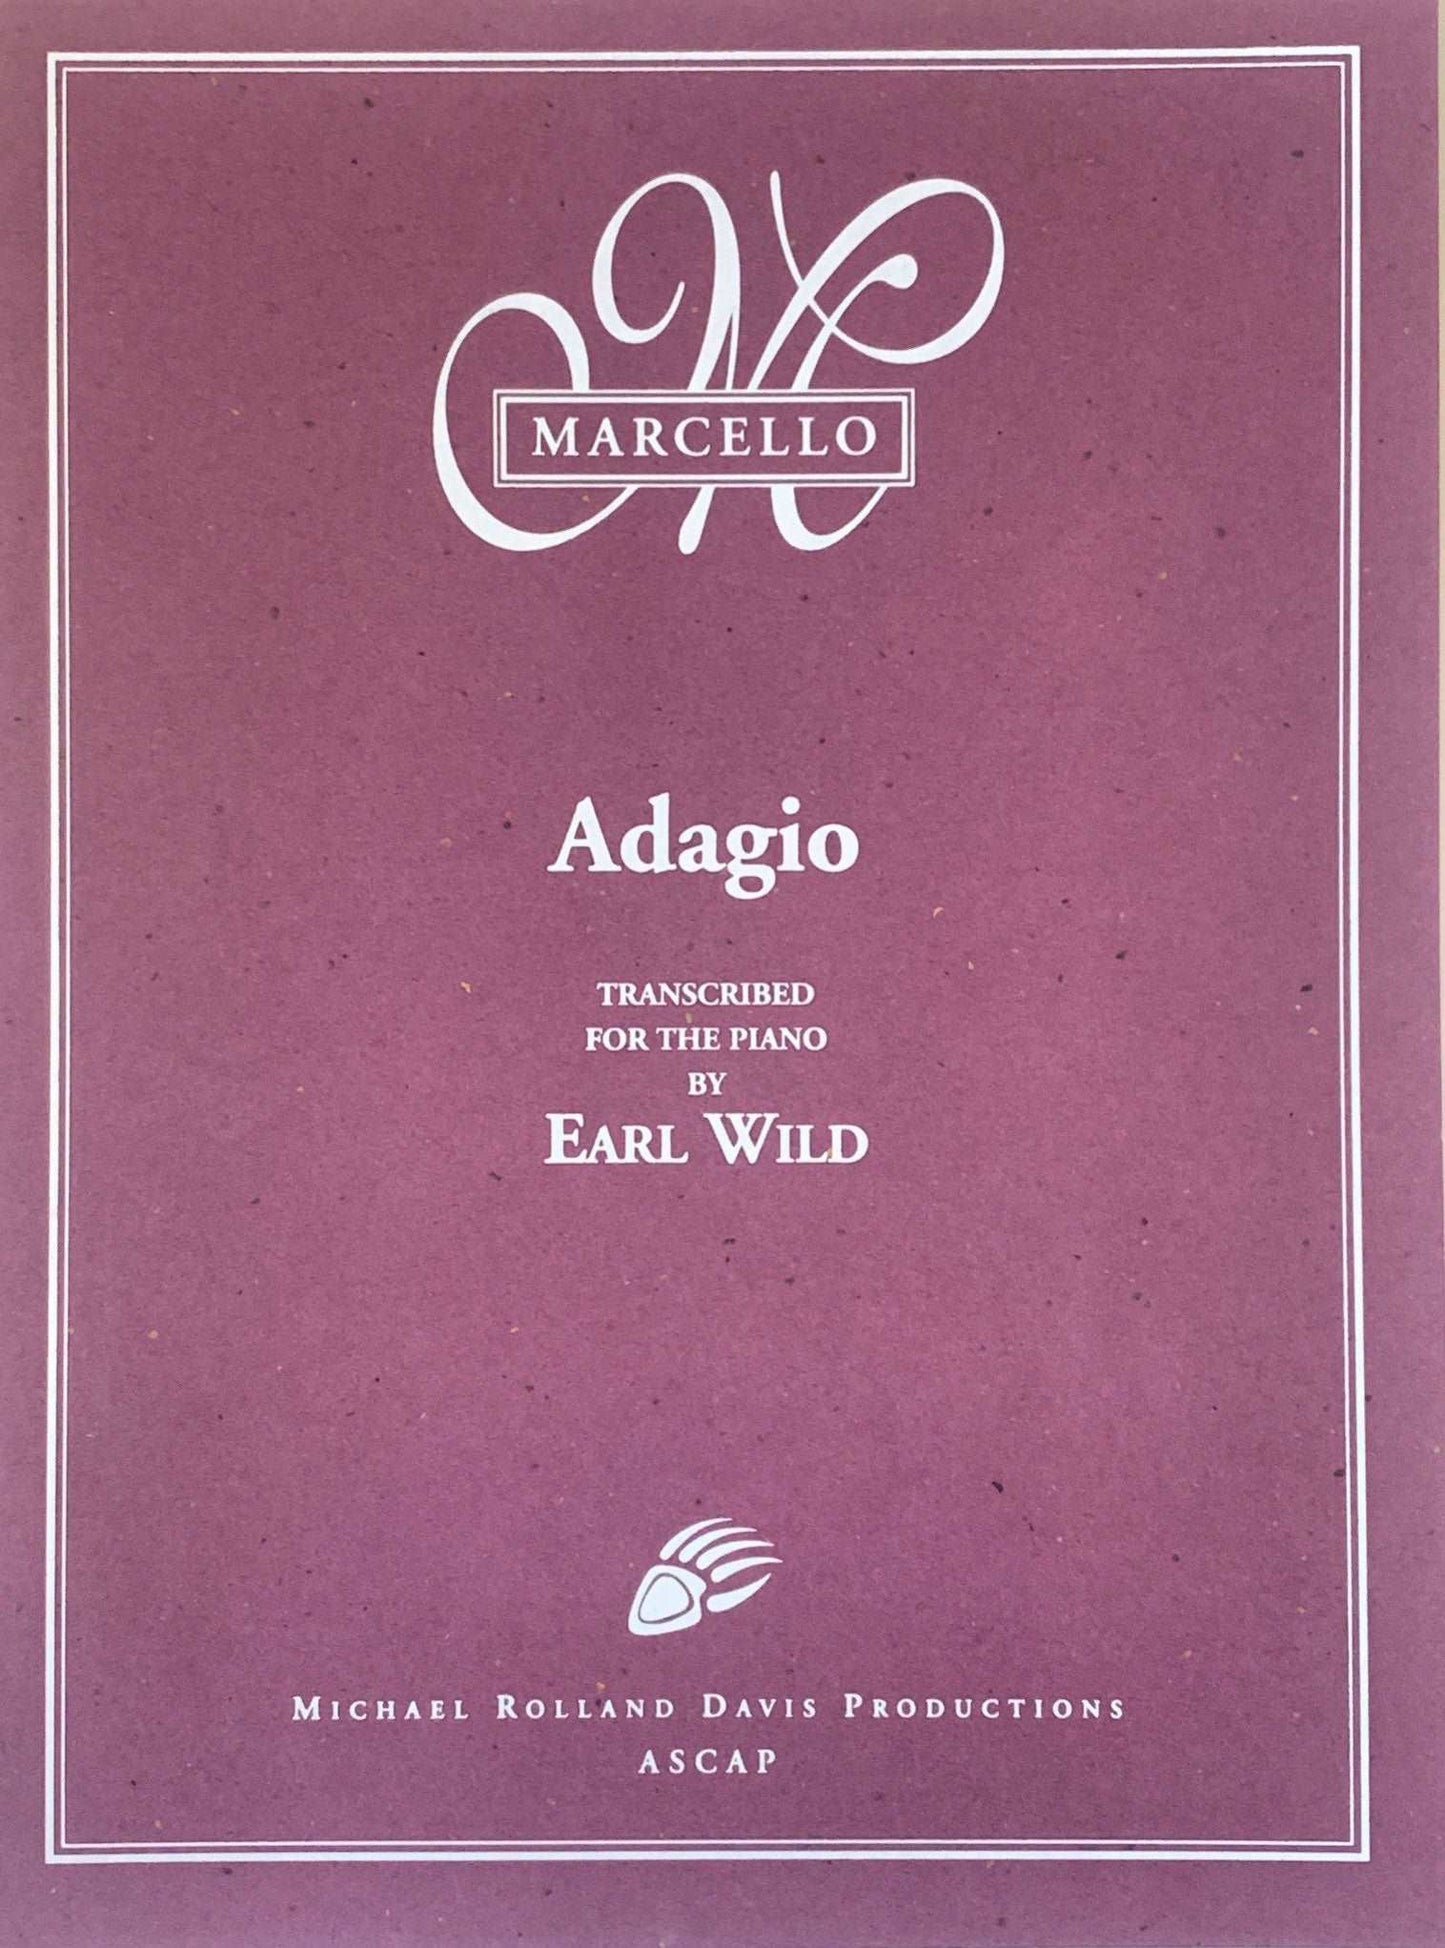 Marcello-Earl Wild: ‘Adagio’